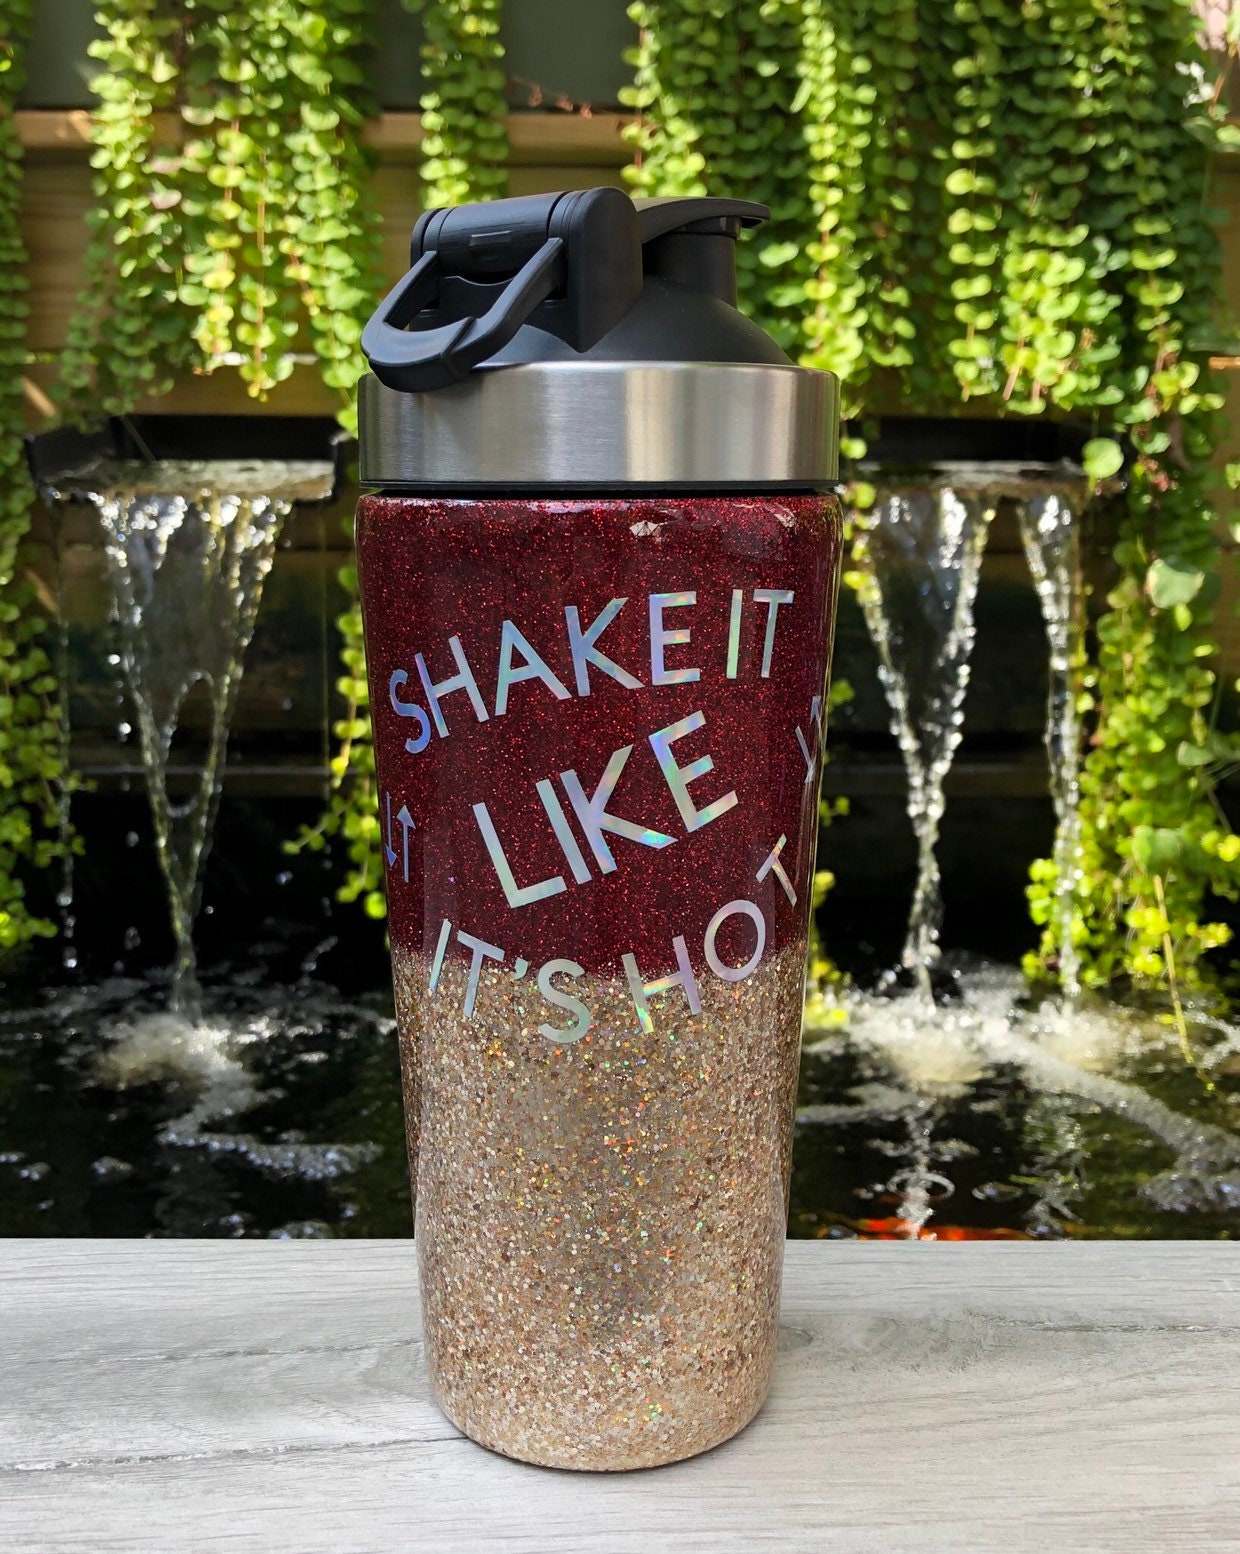 Brew Glitter Black Shimmer (4g, 1x Shaker Jar) | Edible Glitter for Beer,  Cocktails or Mocktails!